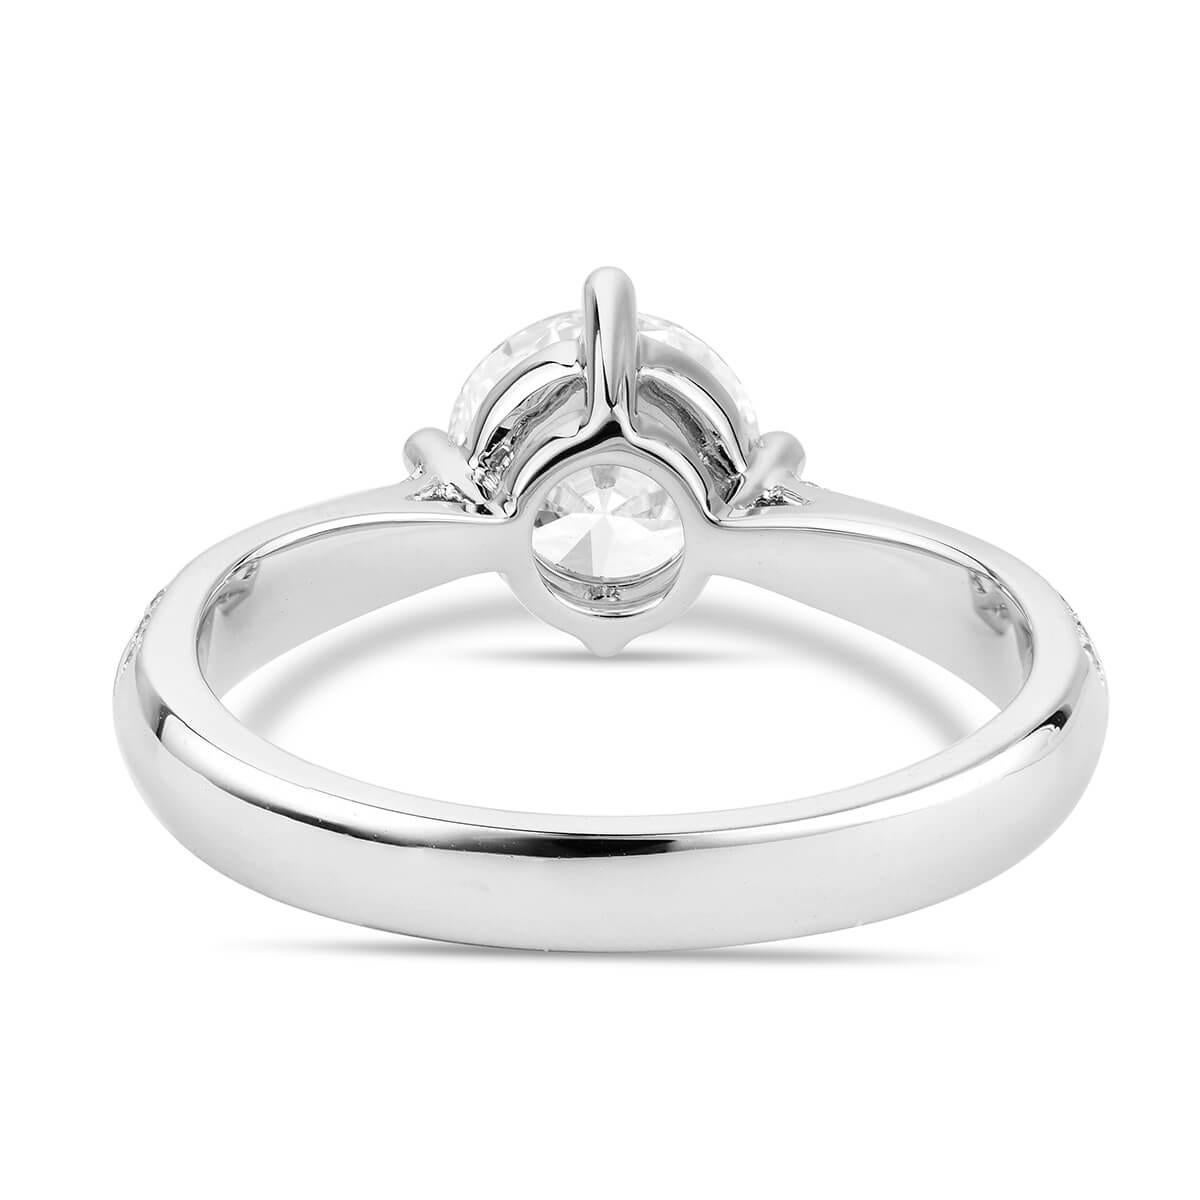 Women's or Men's GIA Certified White Gold Engagement Ring, 1.24 Carat